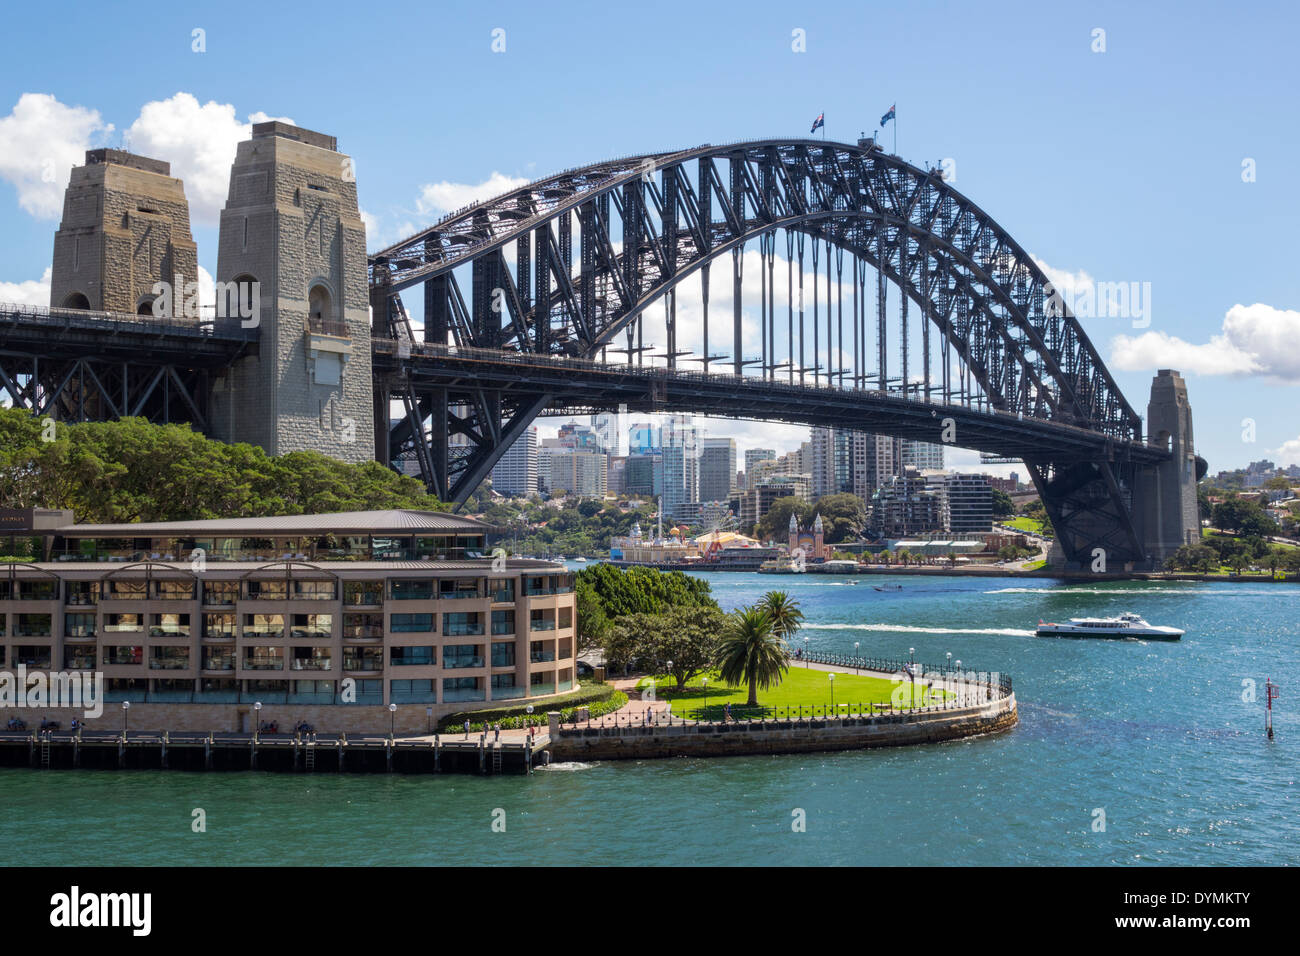 Sydney Australien, West Circular Quay, Sydney Harbour Bridge, Hafen, Parramatta River, Wasser, Park Hyatt, Hotel, Hickson Road Reserve, AU140308106 Stockfoto